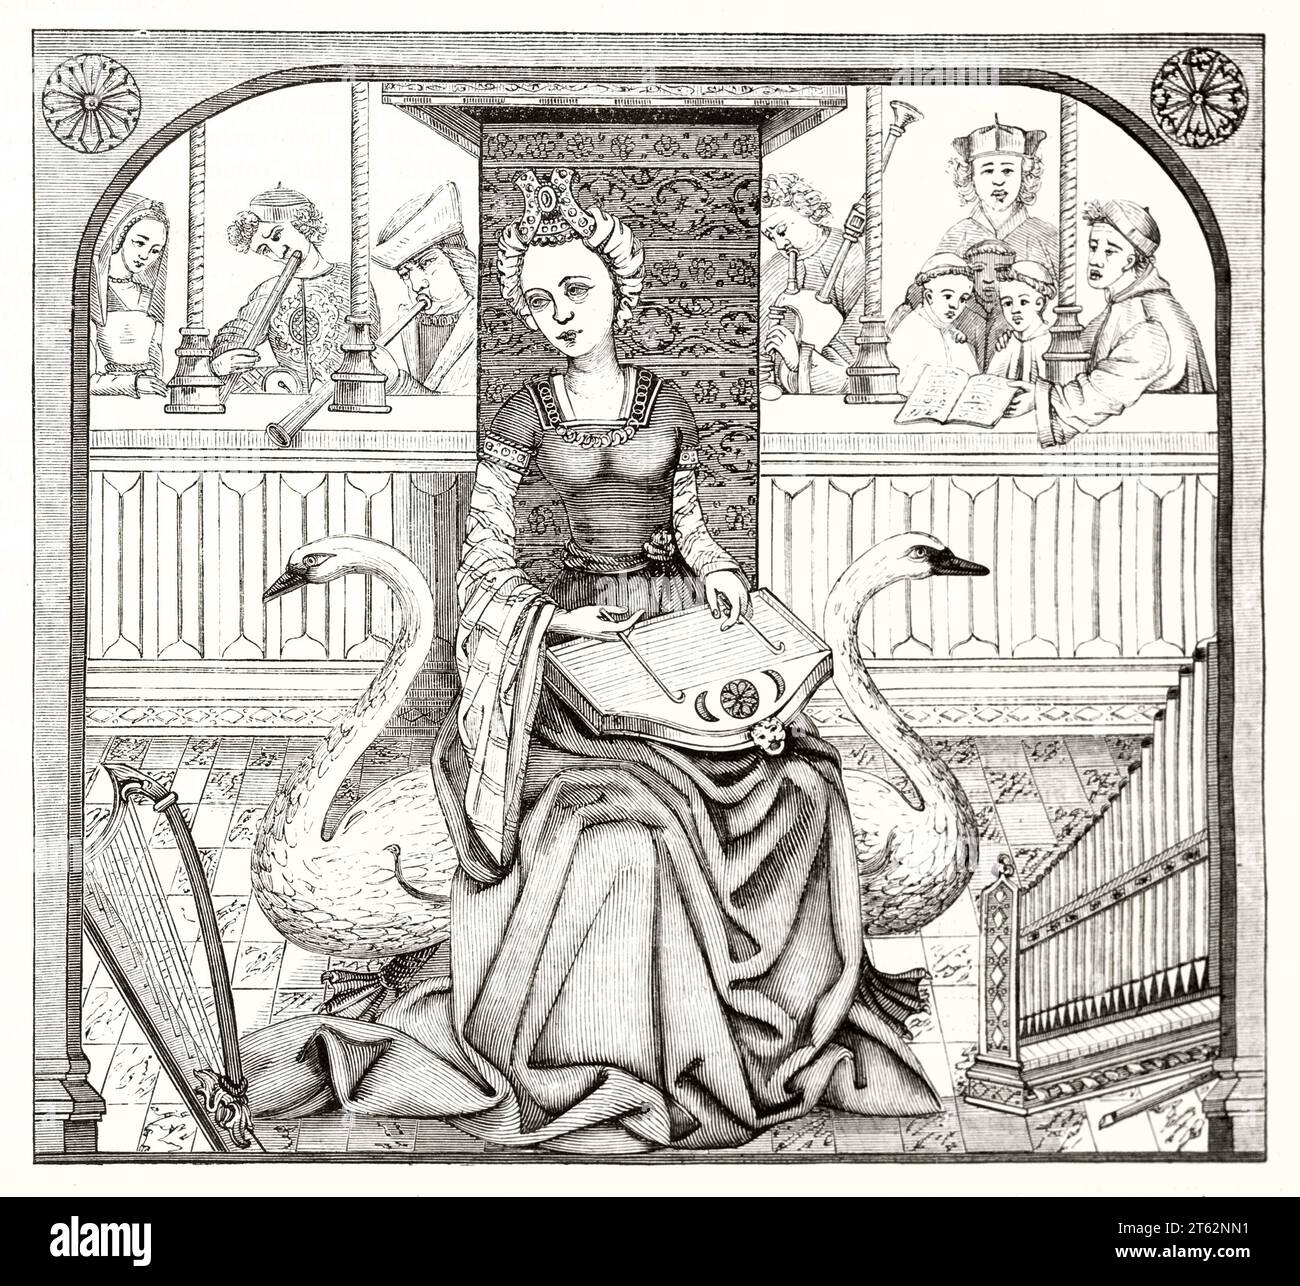 Antike allegorische Darstellung der Musik in der Zeit Karls VIII. Vom unbekannten Autor, publ. Auf Magasin Pittoresque, Paris, 1849 Stockfoto